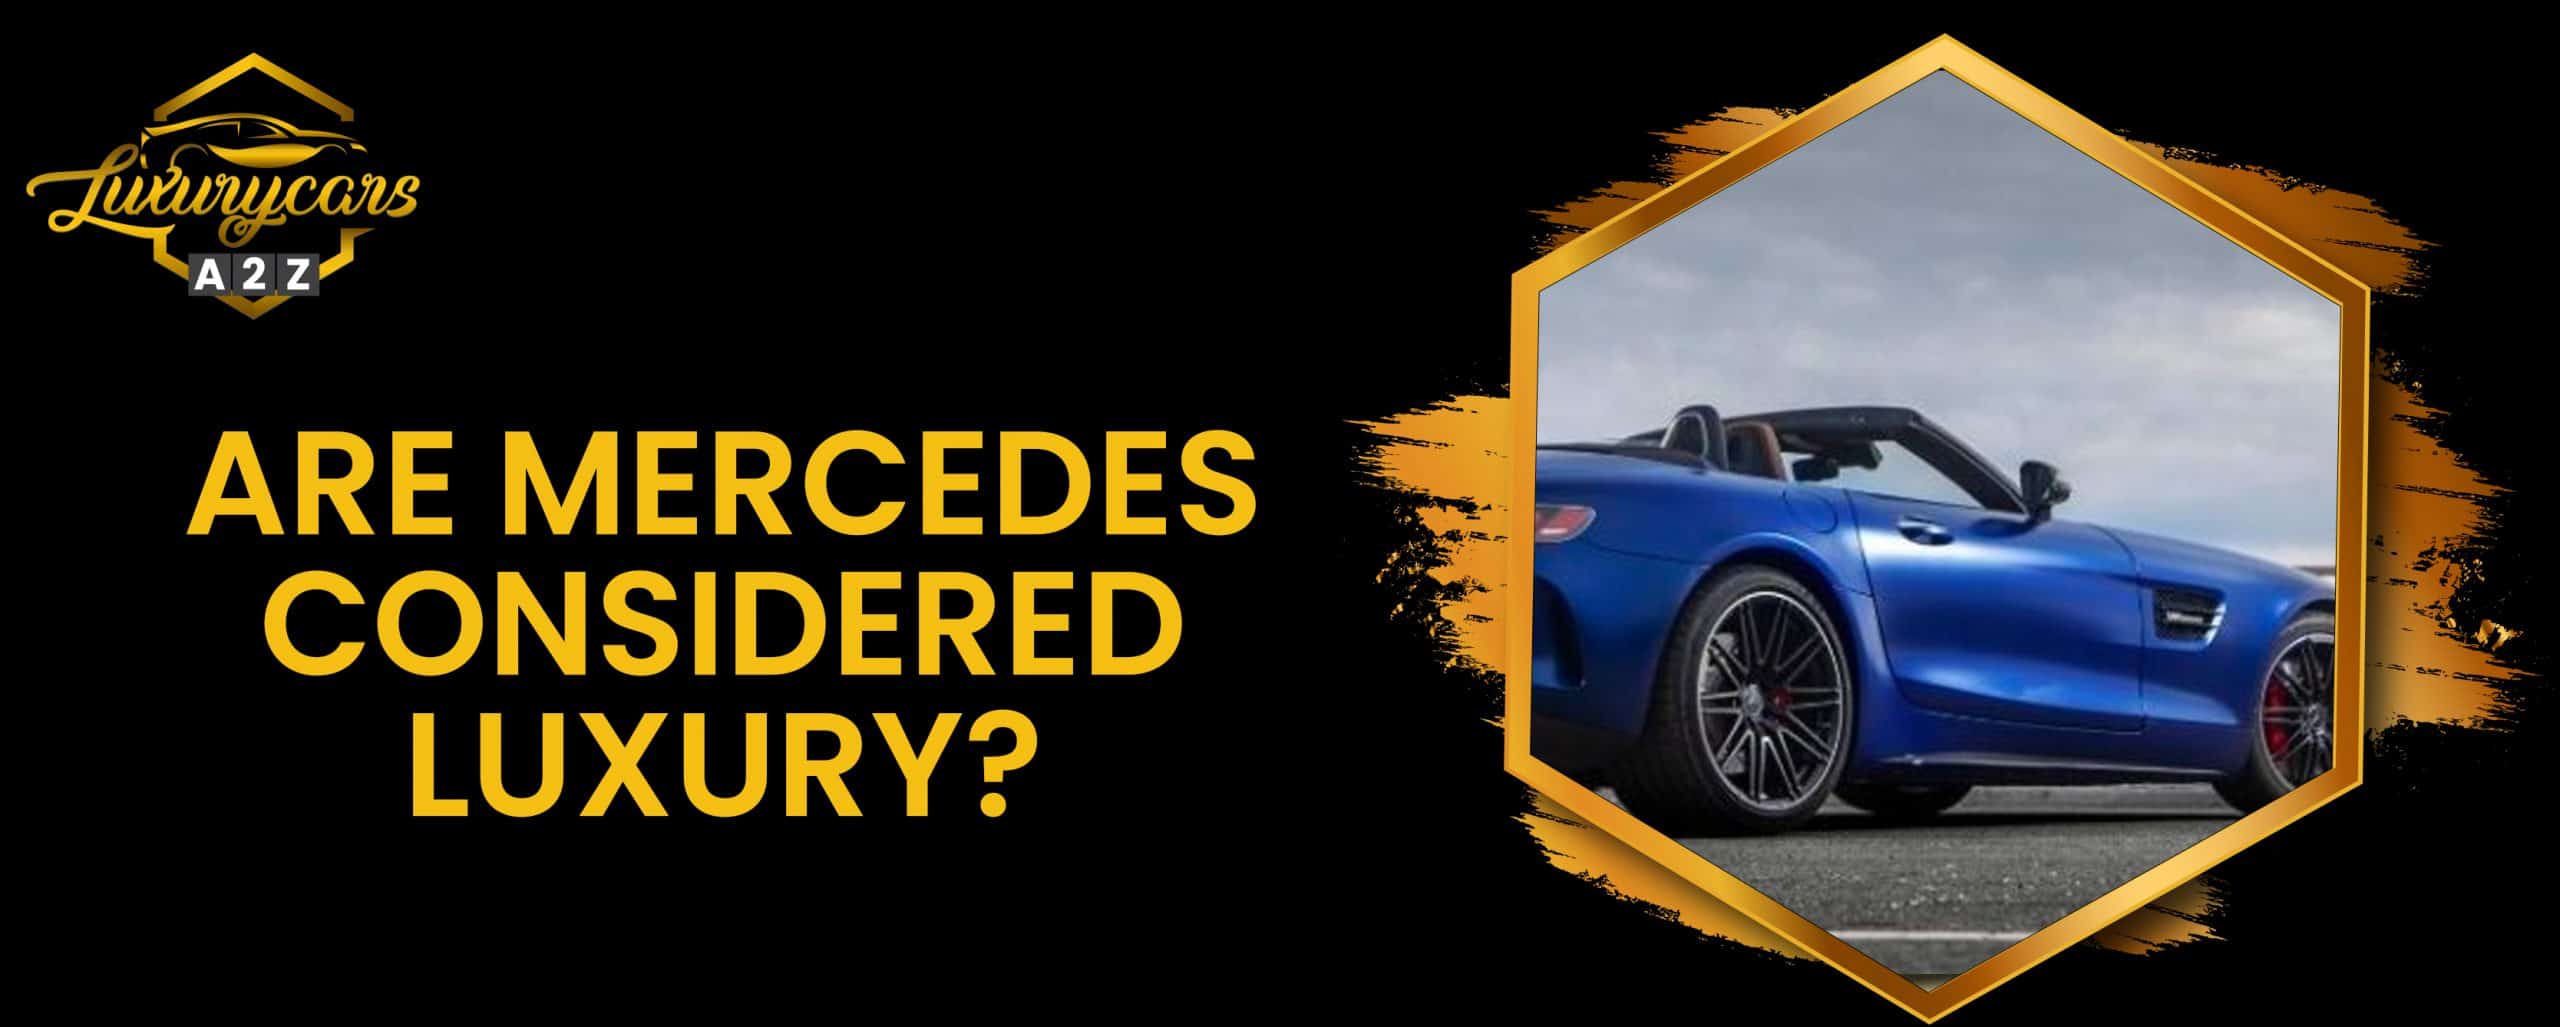 Les Mercedes sont-elles considérées comme du luxe ?